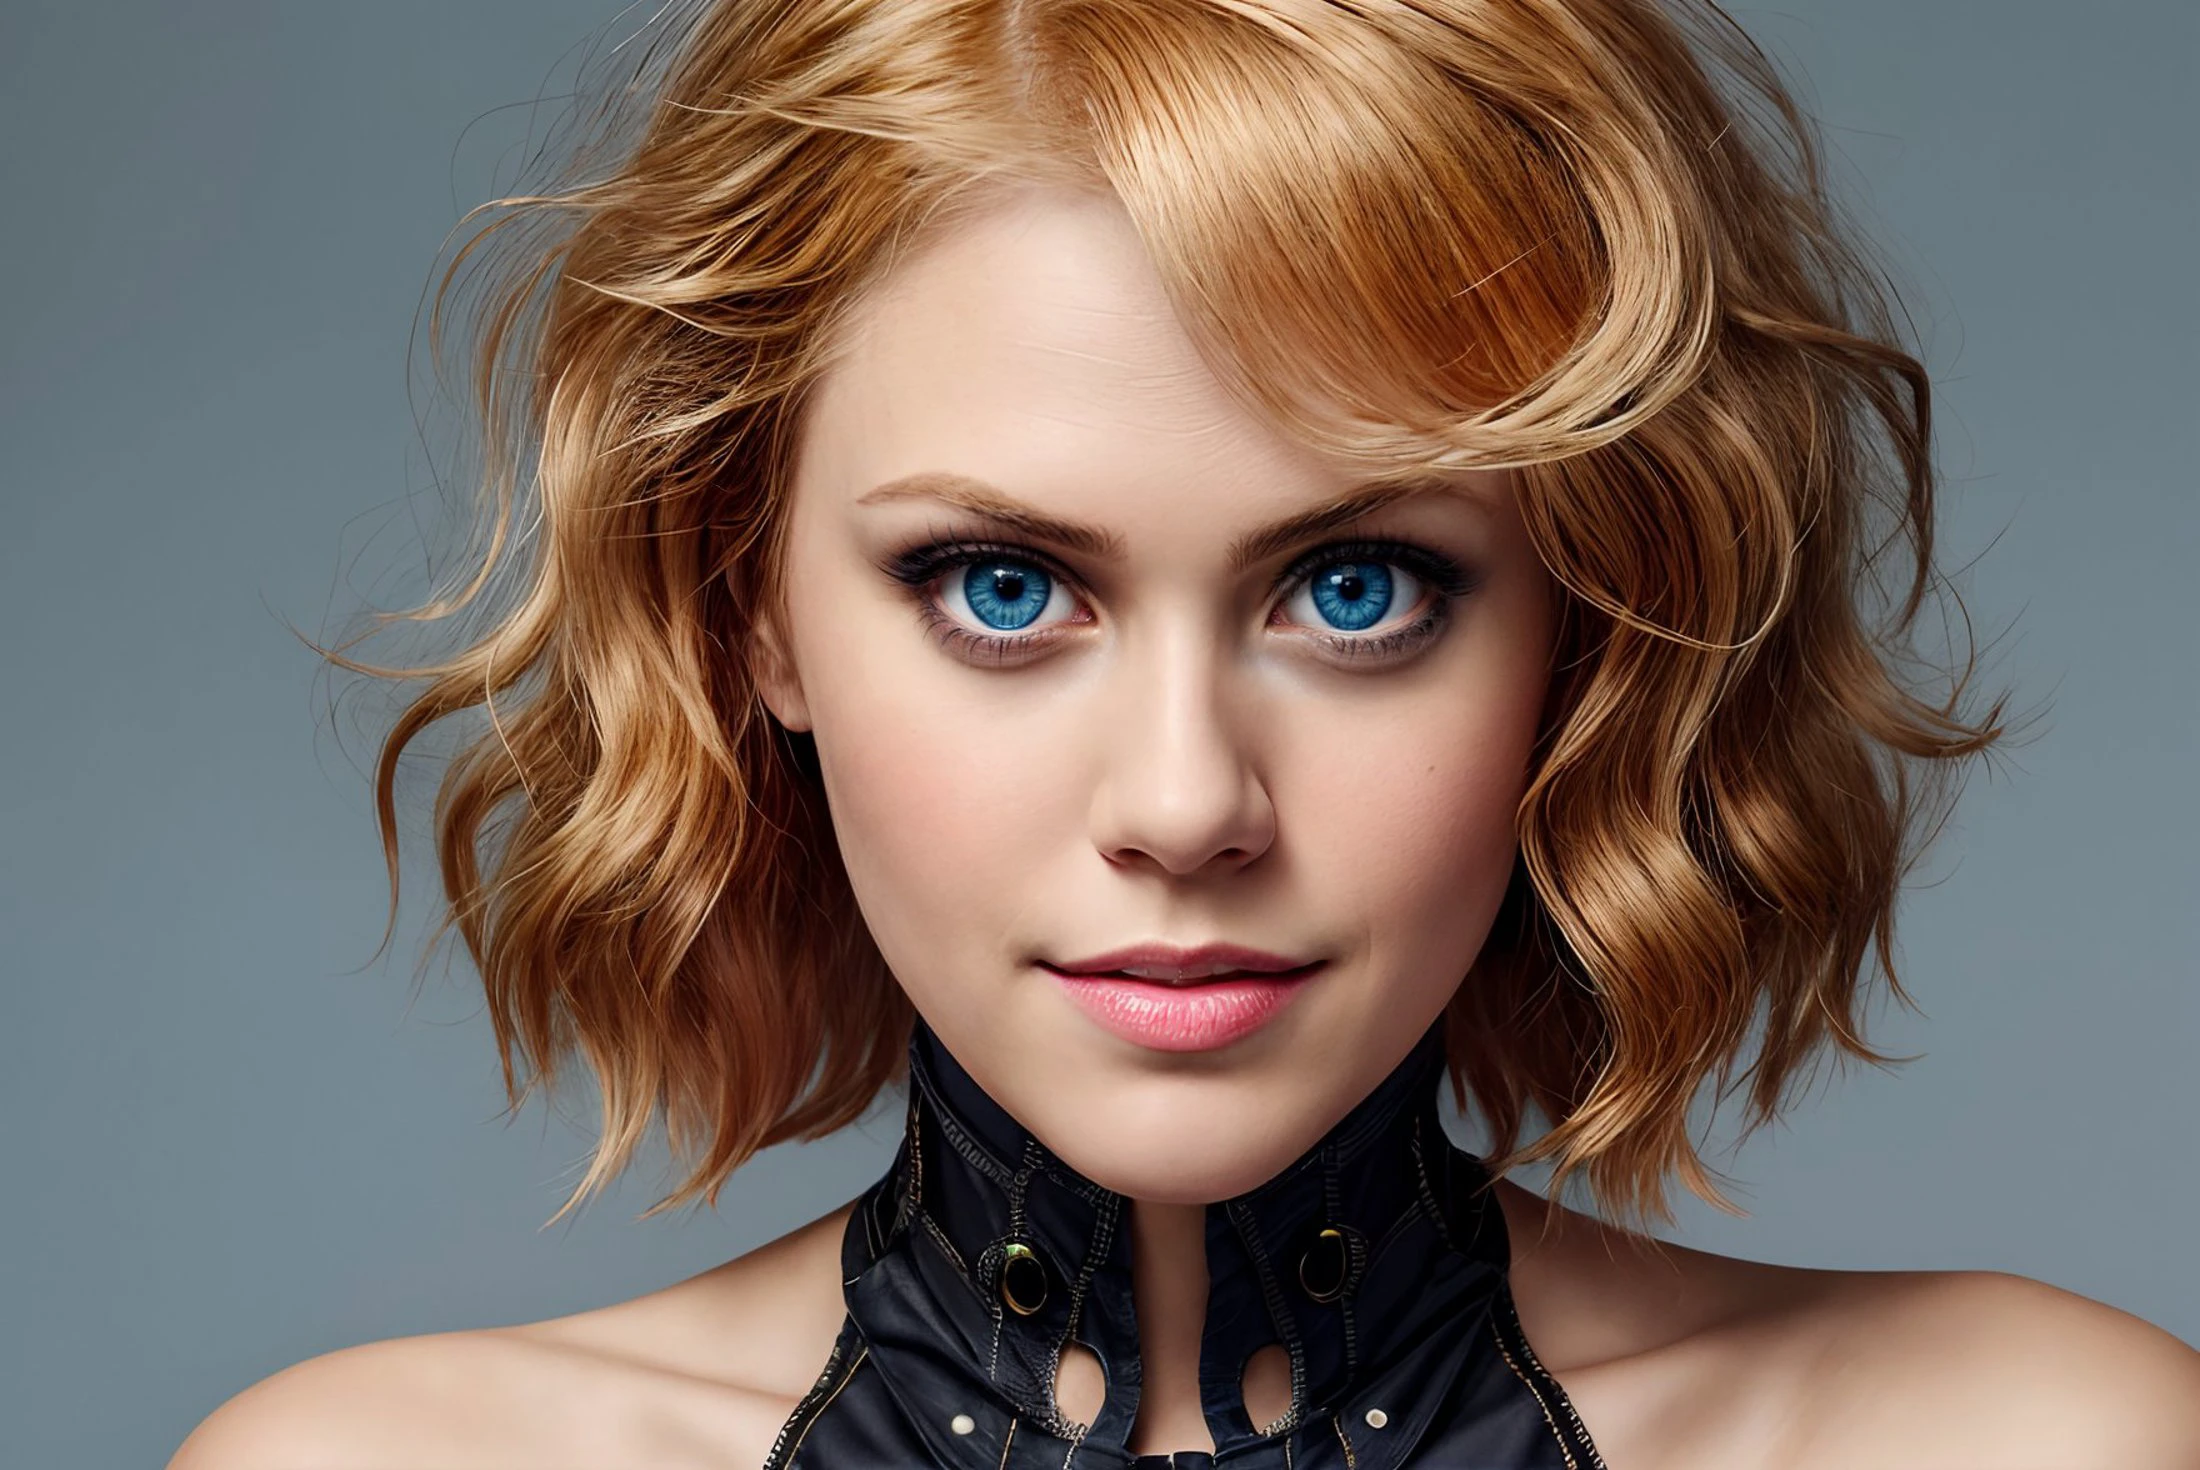 image de haute qualité de Janetvarney cheveux blonds yeux bleus edgcorset  